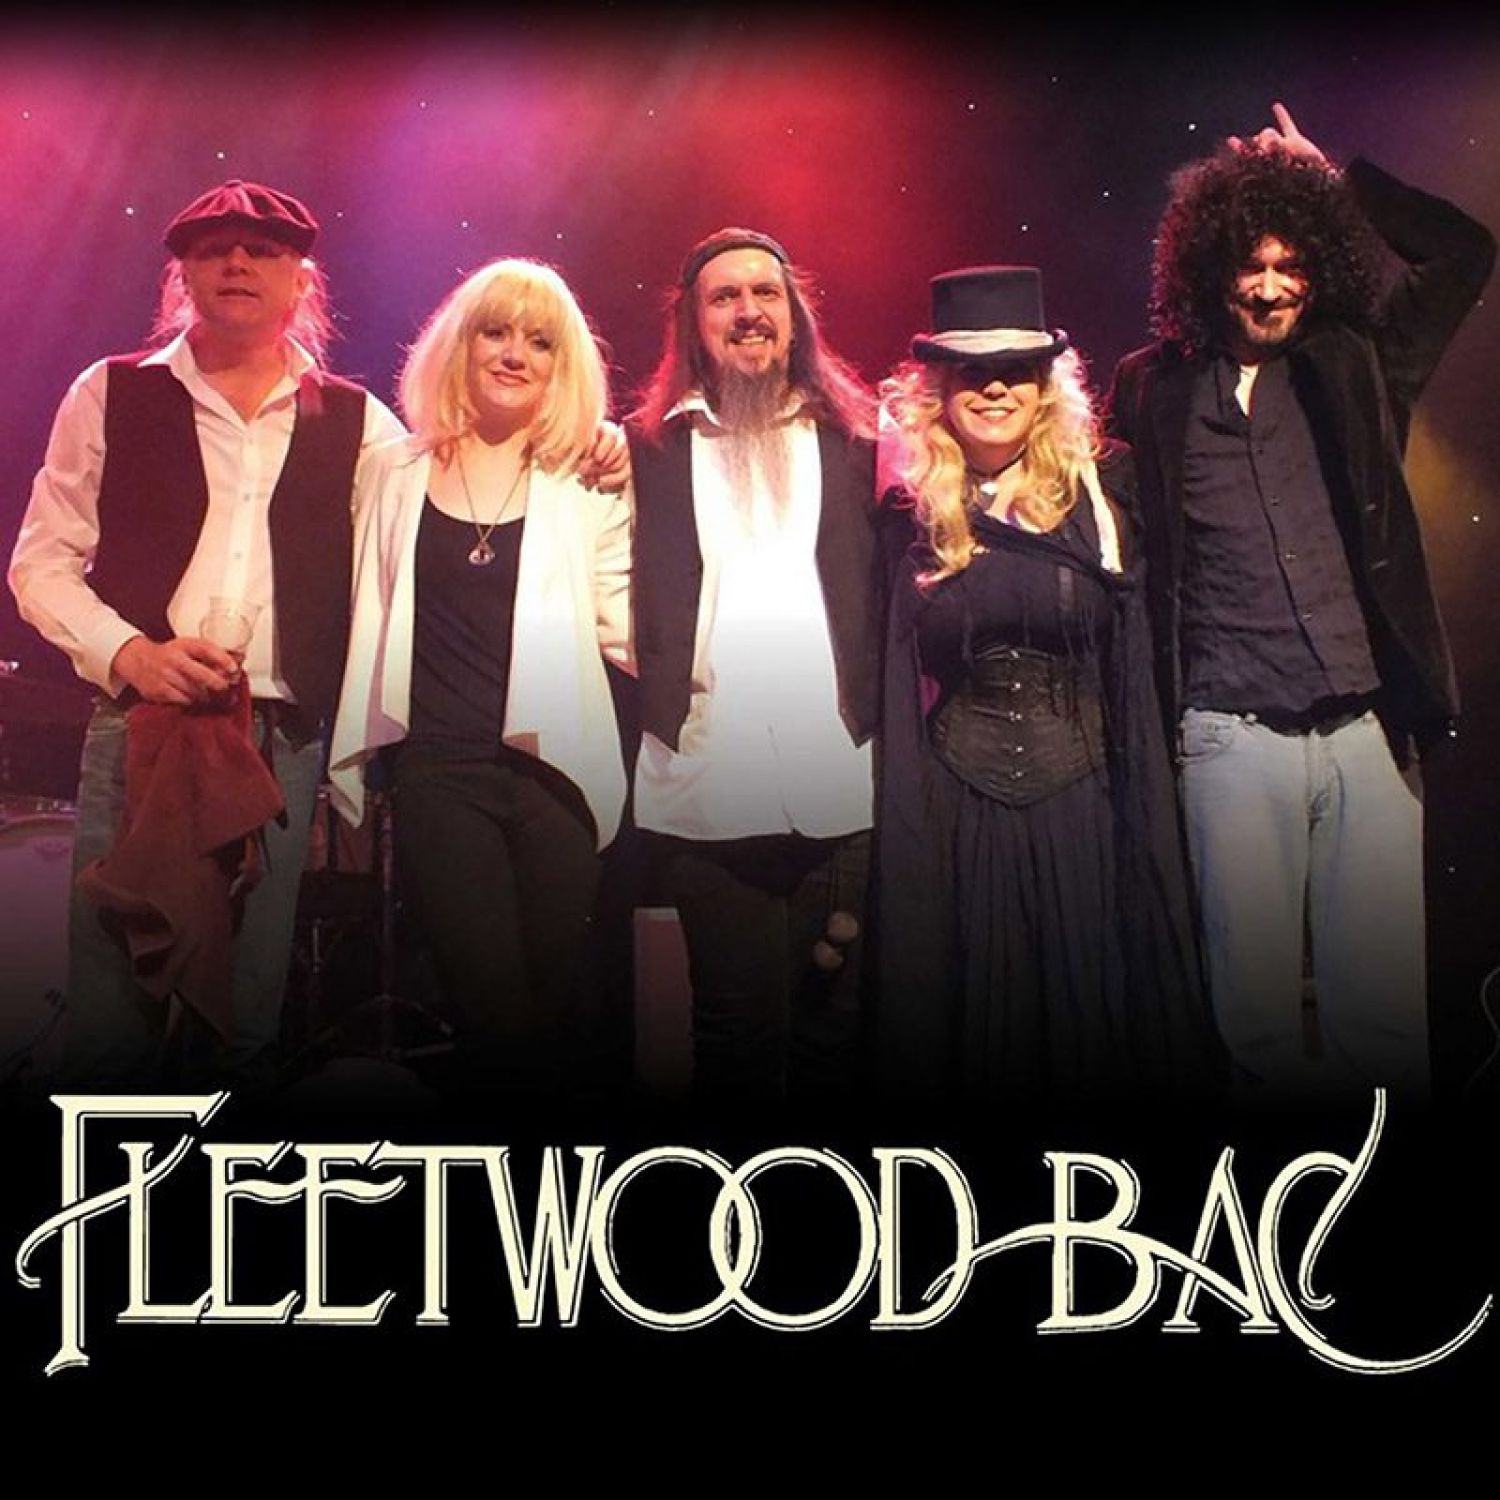 Fleetwood Bac 